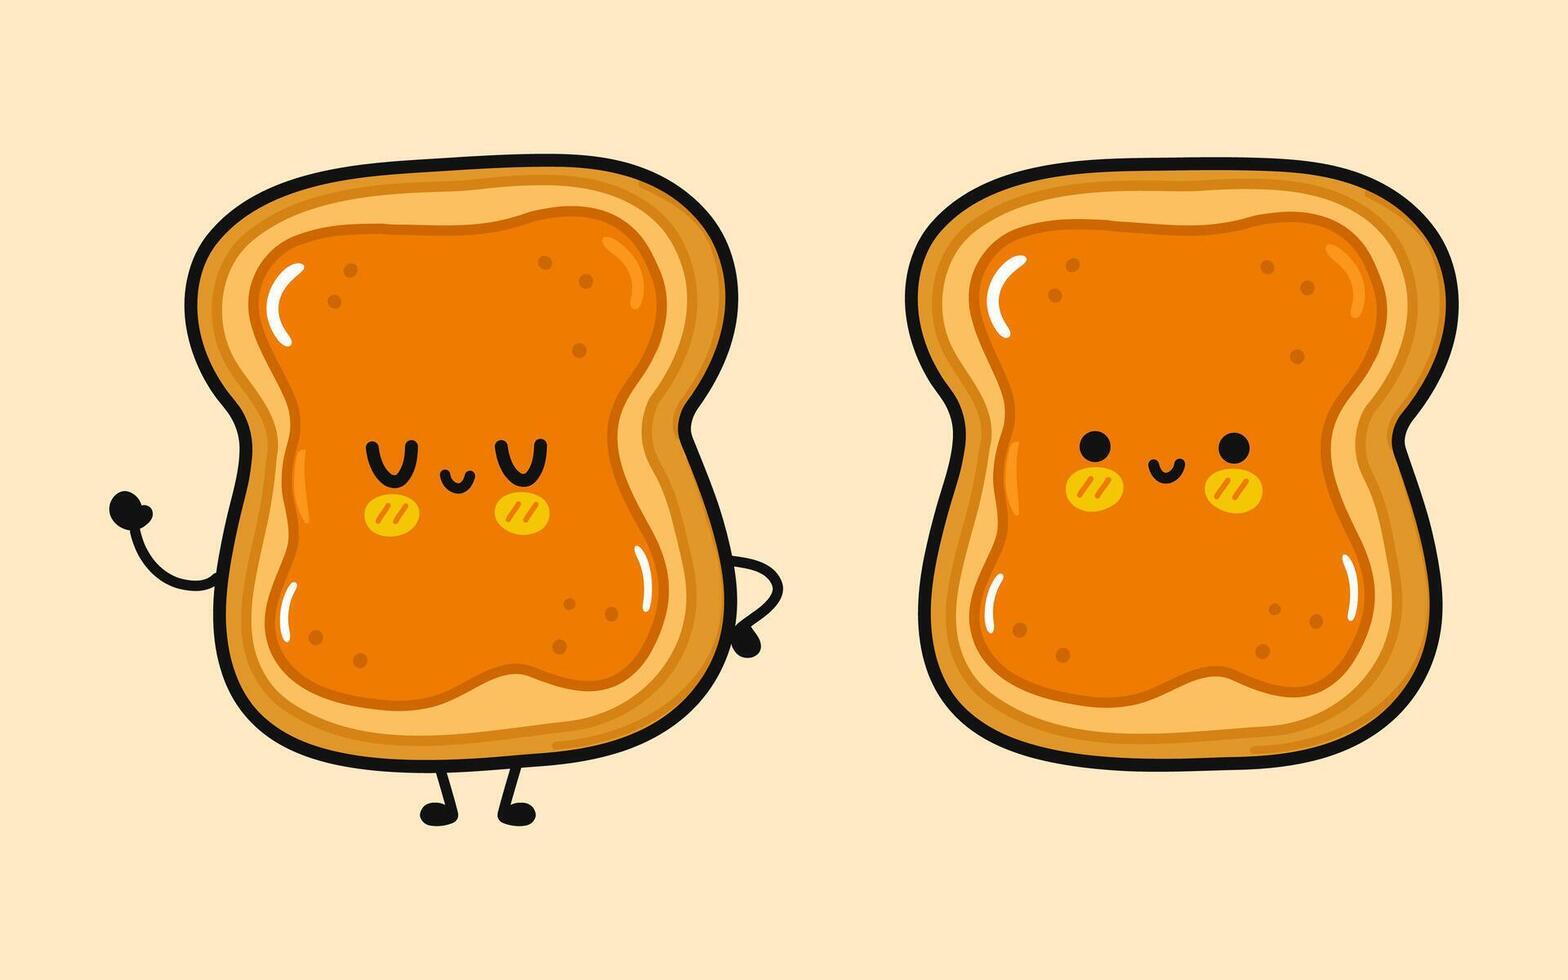 süß komisch Toast Stück von Brot mit Erdnuss Butter. Vektor Hand gezeichnet Karikatur kawaii Charakter Illustration Symbol. isoliert braun Hintergrund. Toast Stück von Brot mit Erdnuss Butter Charakter Konzept